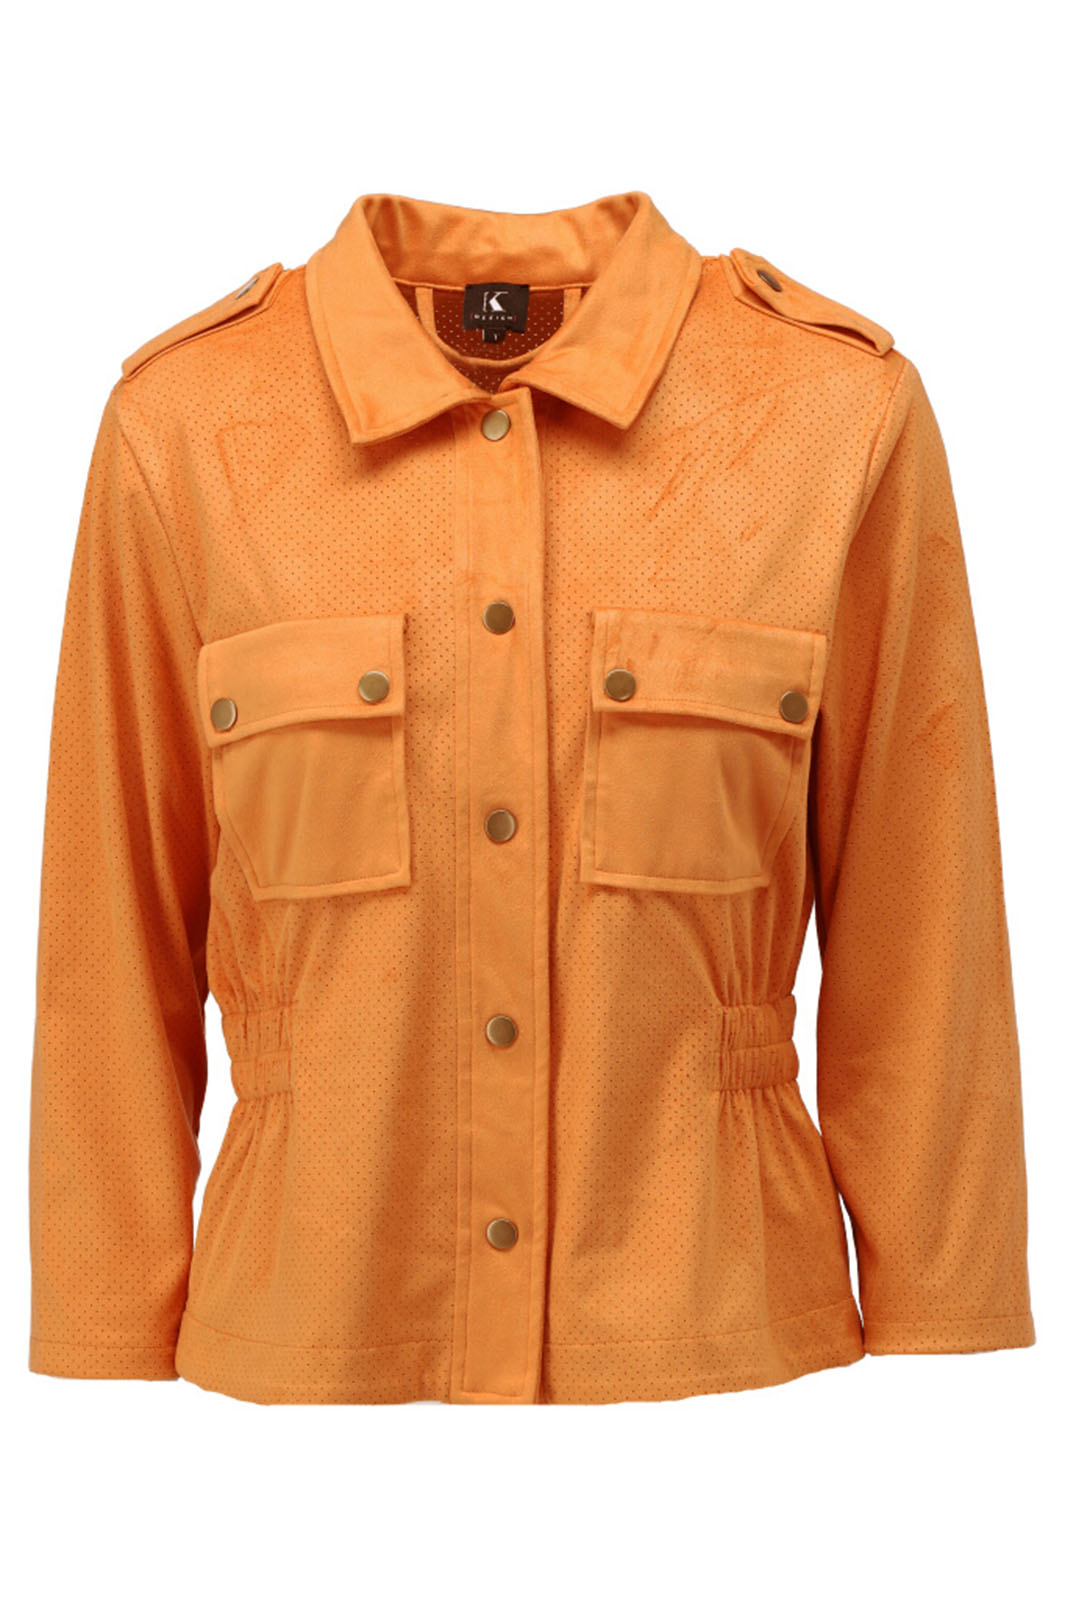 K Design Y910 Orange Marmalade Suede Look Jacket - Experience Boutique